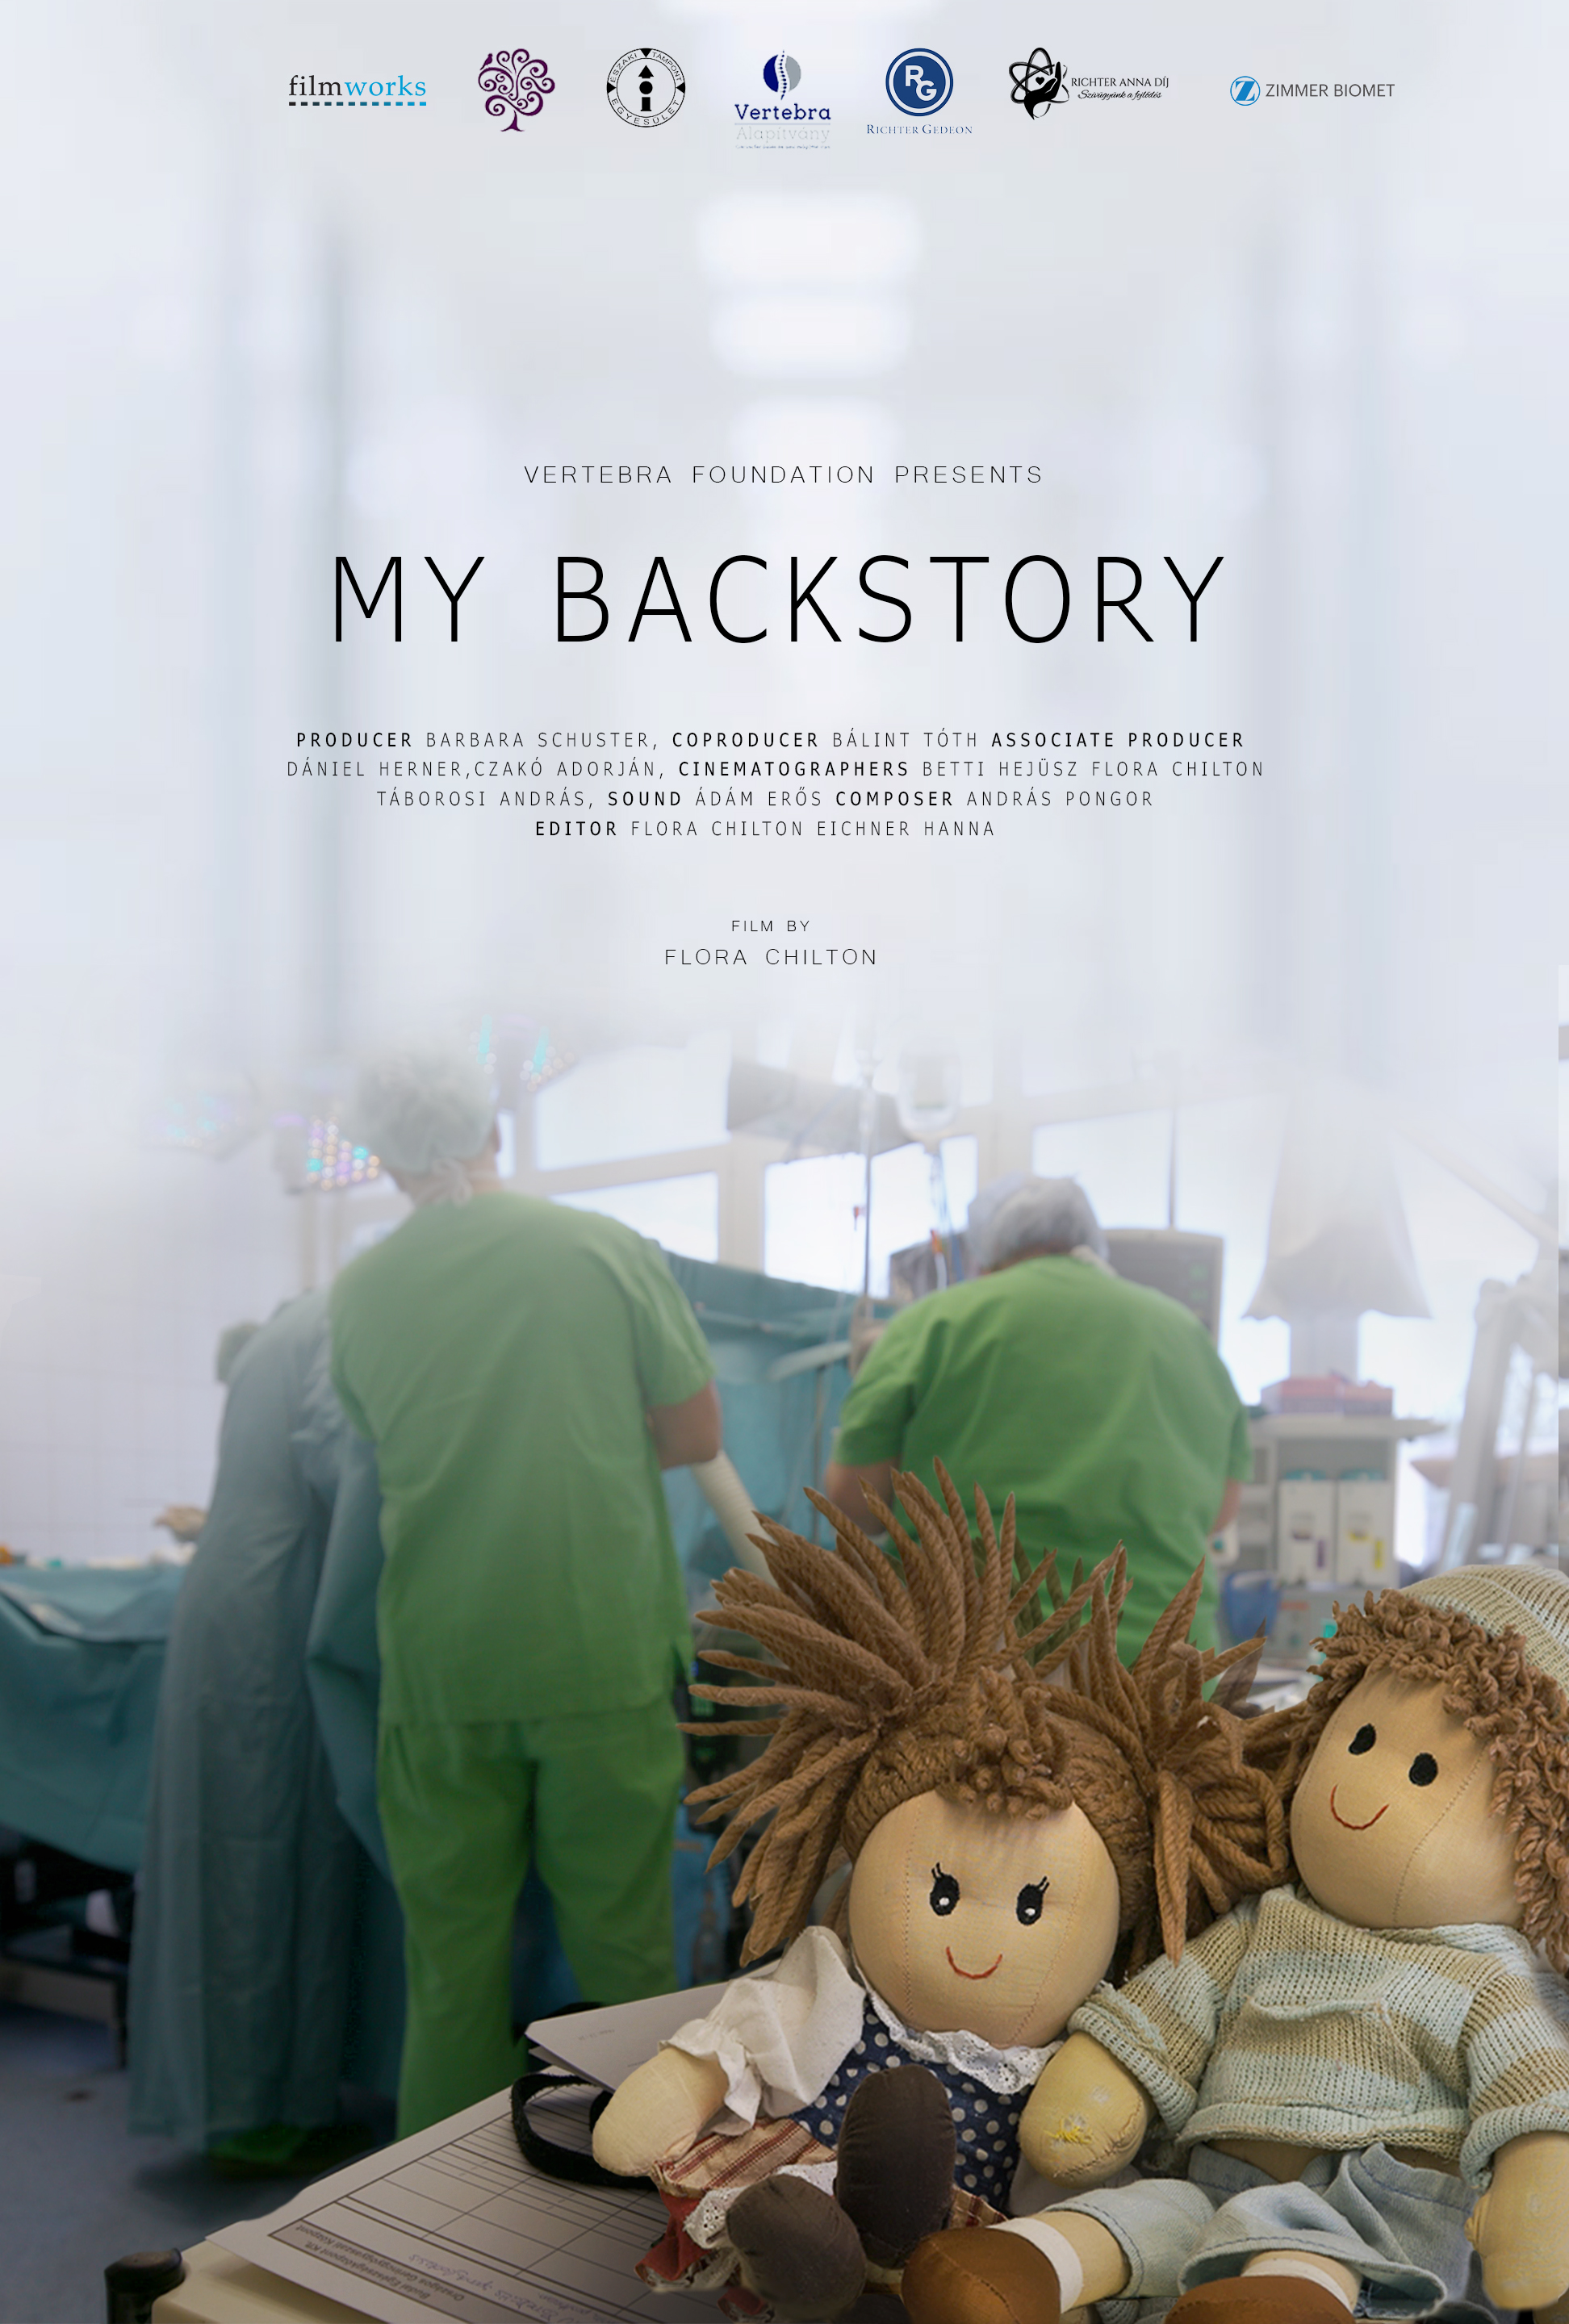 My Back Story<br /><br />Dorottya, egy visszahúzódó 15 éves lány, aki négy éve gerincferdüléssel küzd. Szülei elkötelezetten támogatják lányukat a betegség nehézségeiben, azonban a család élete fordulóponthoz érkezik. Dorottya állapota olyan súlyossá válik, hogy már nem marad más lehetőség a gyógyulására, csupán a rettegett gerincműtét. <br />A gerinckorrekciós műtét napjaink egyik legbonyolultabb orvosi beavatkozása, amelyet gyermekeken végeznek, lehetséges következményei közé tartozik a bénulás, sőt a halál is.    A szülőknek mindezek tudatában kell a végső döntést meghoznia és vállalkozni a család életének egyik legnagyobb próbatételére.  De hogyan tudják a félelmeiket leküzdeni, Dorottyában és egymásban a lelket tartani, hogy kitartsanak az út végéig ami lányuk számára a testi és lelki felépülést egyaránt jelentheti? <br /><br />poszter 42x60 cm